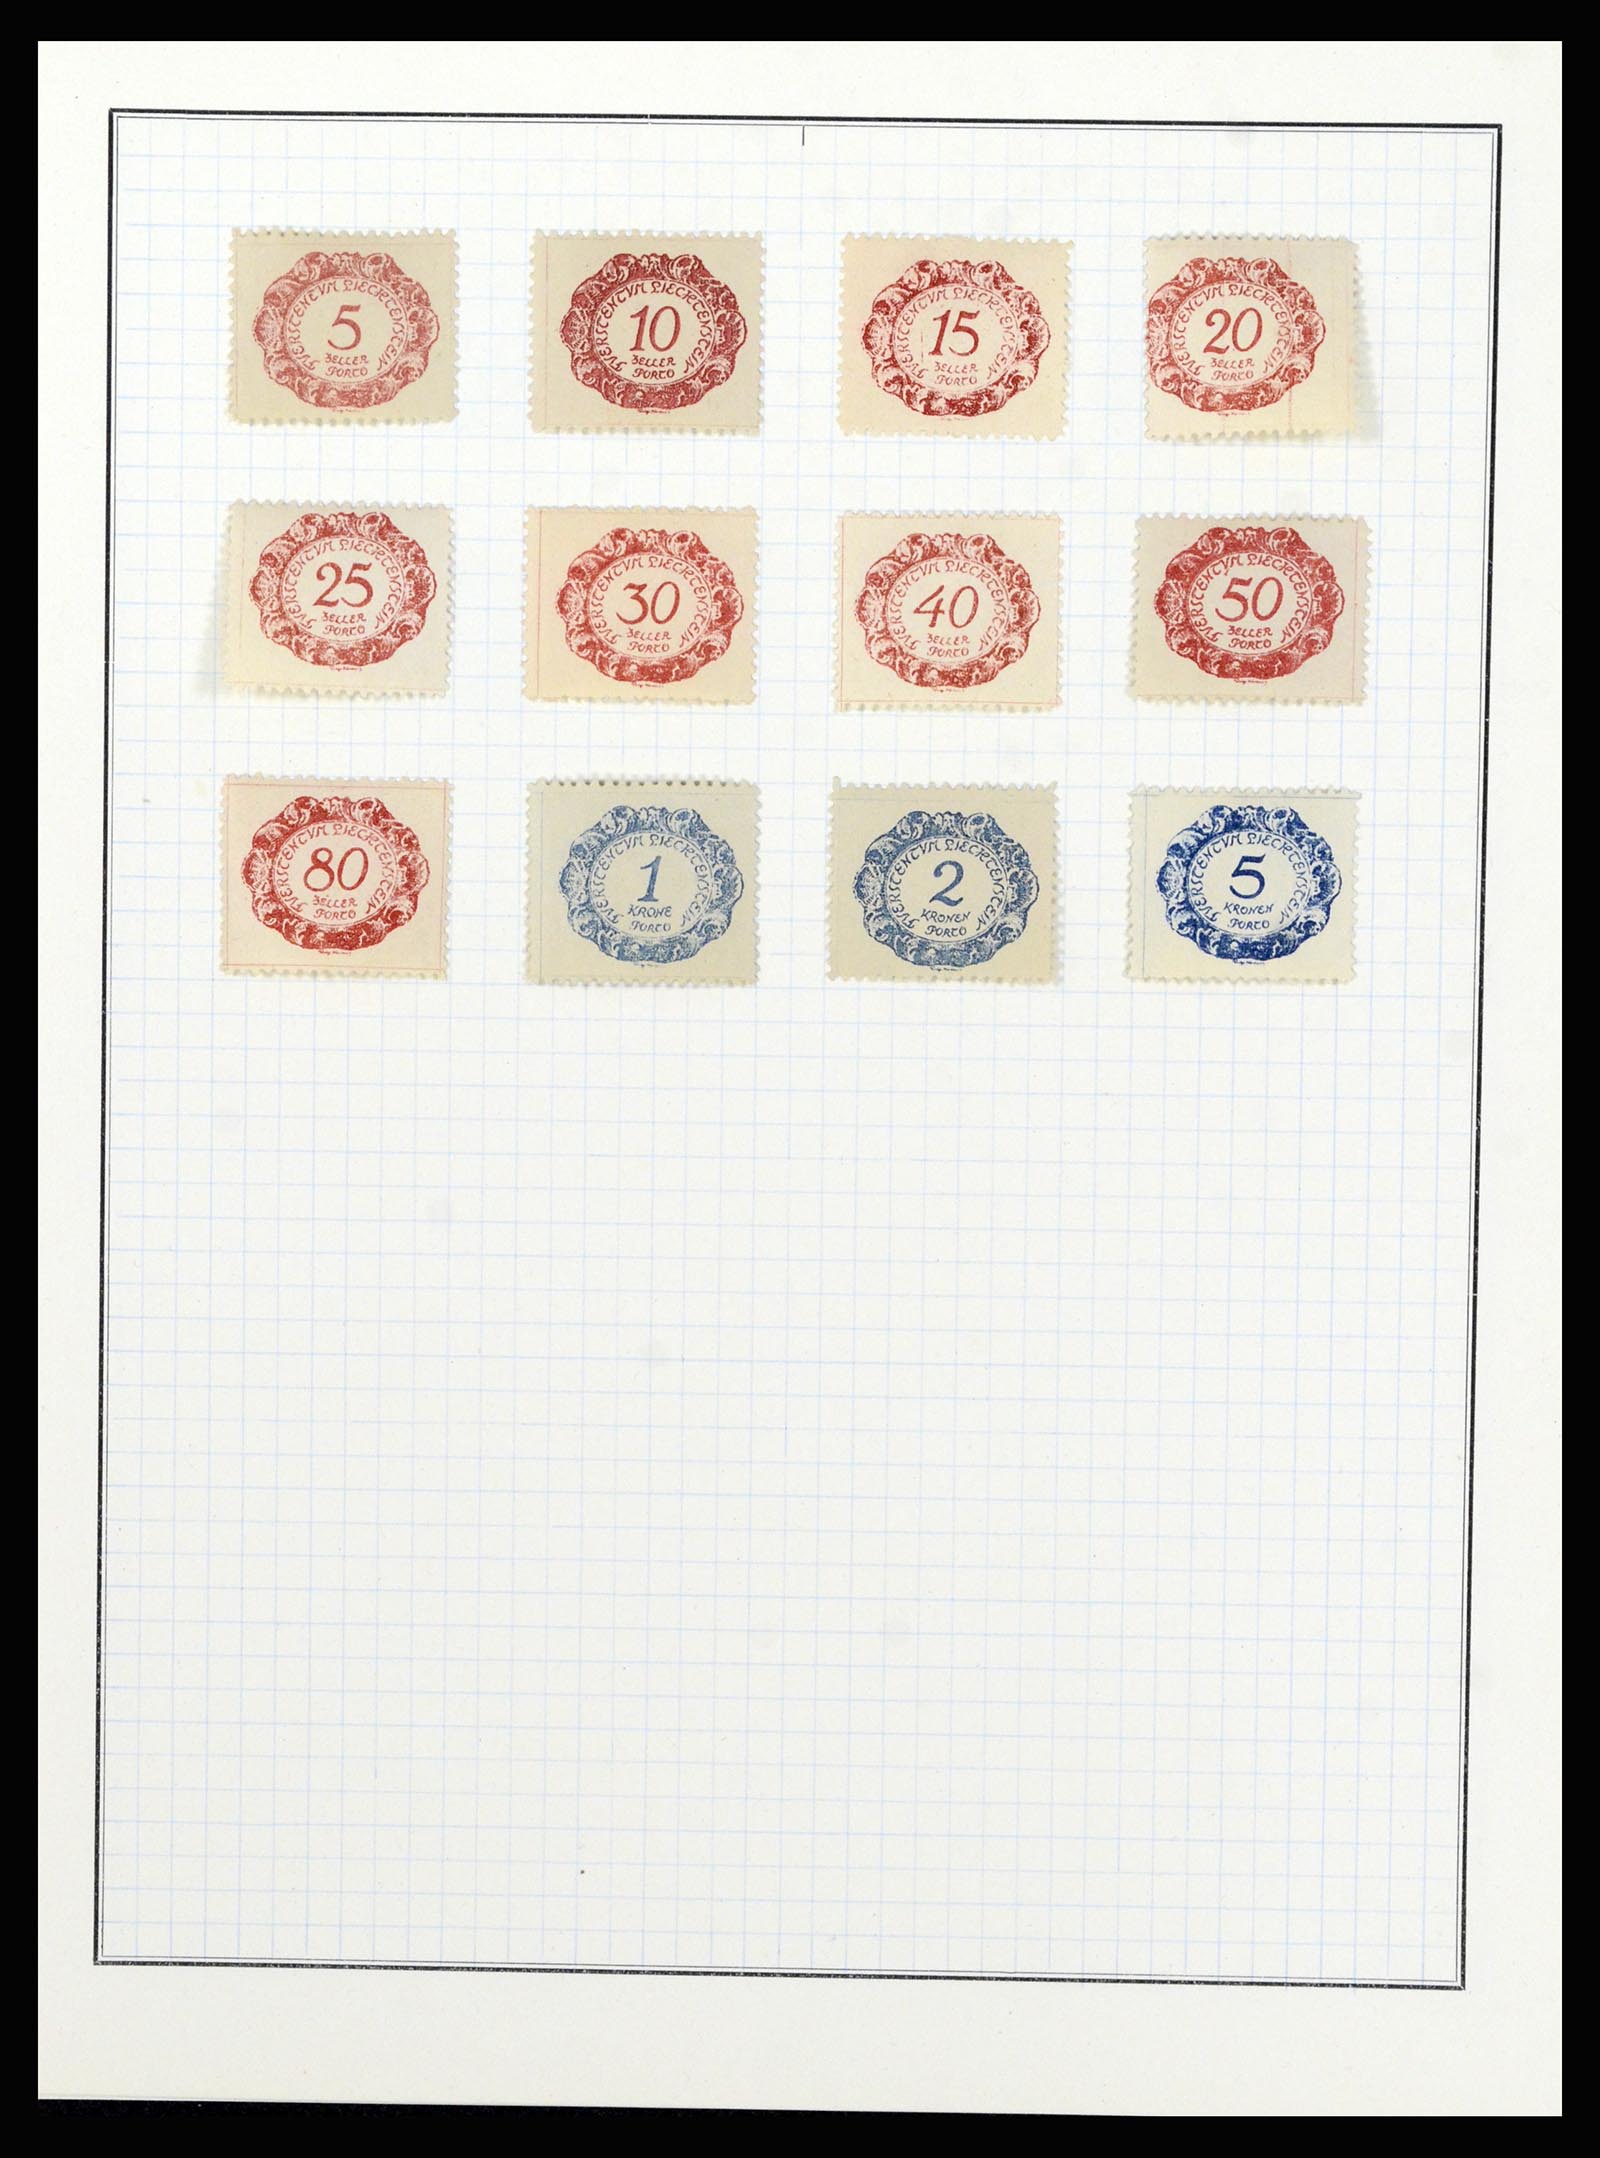 36766 035 - Stamp collection 36766 Liechtenstein 1912-1955.